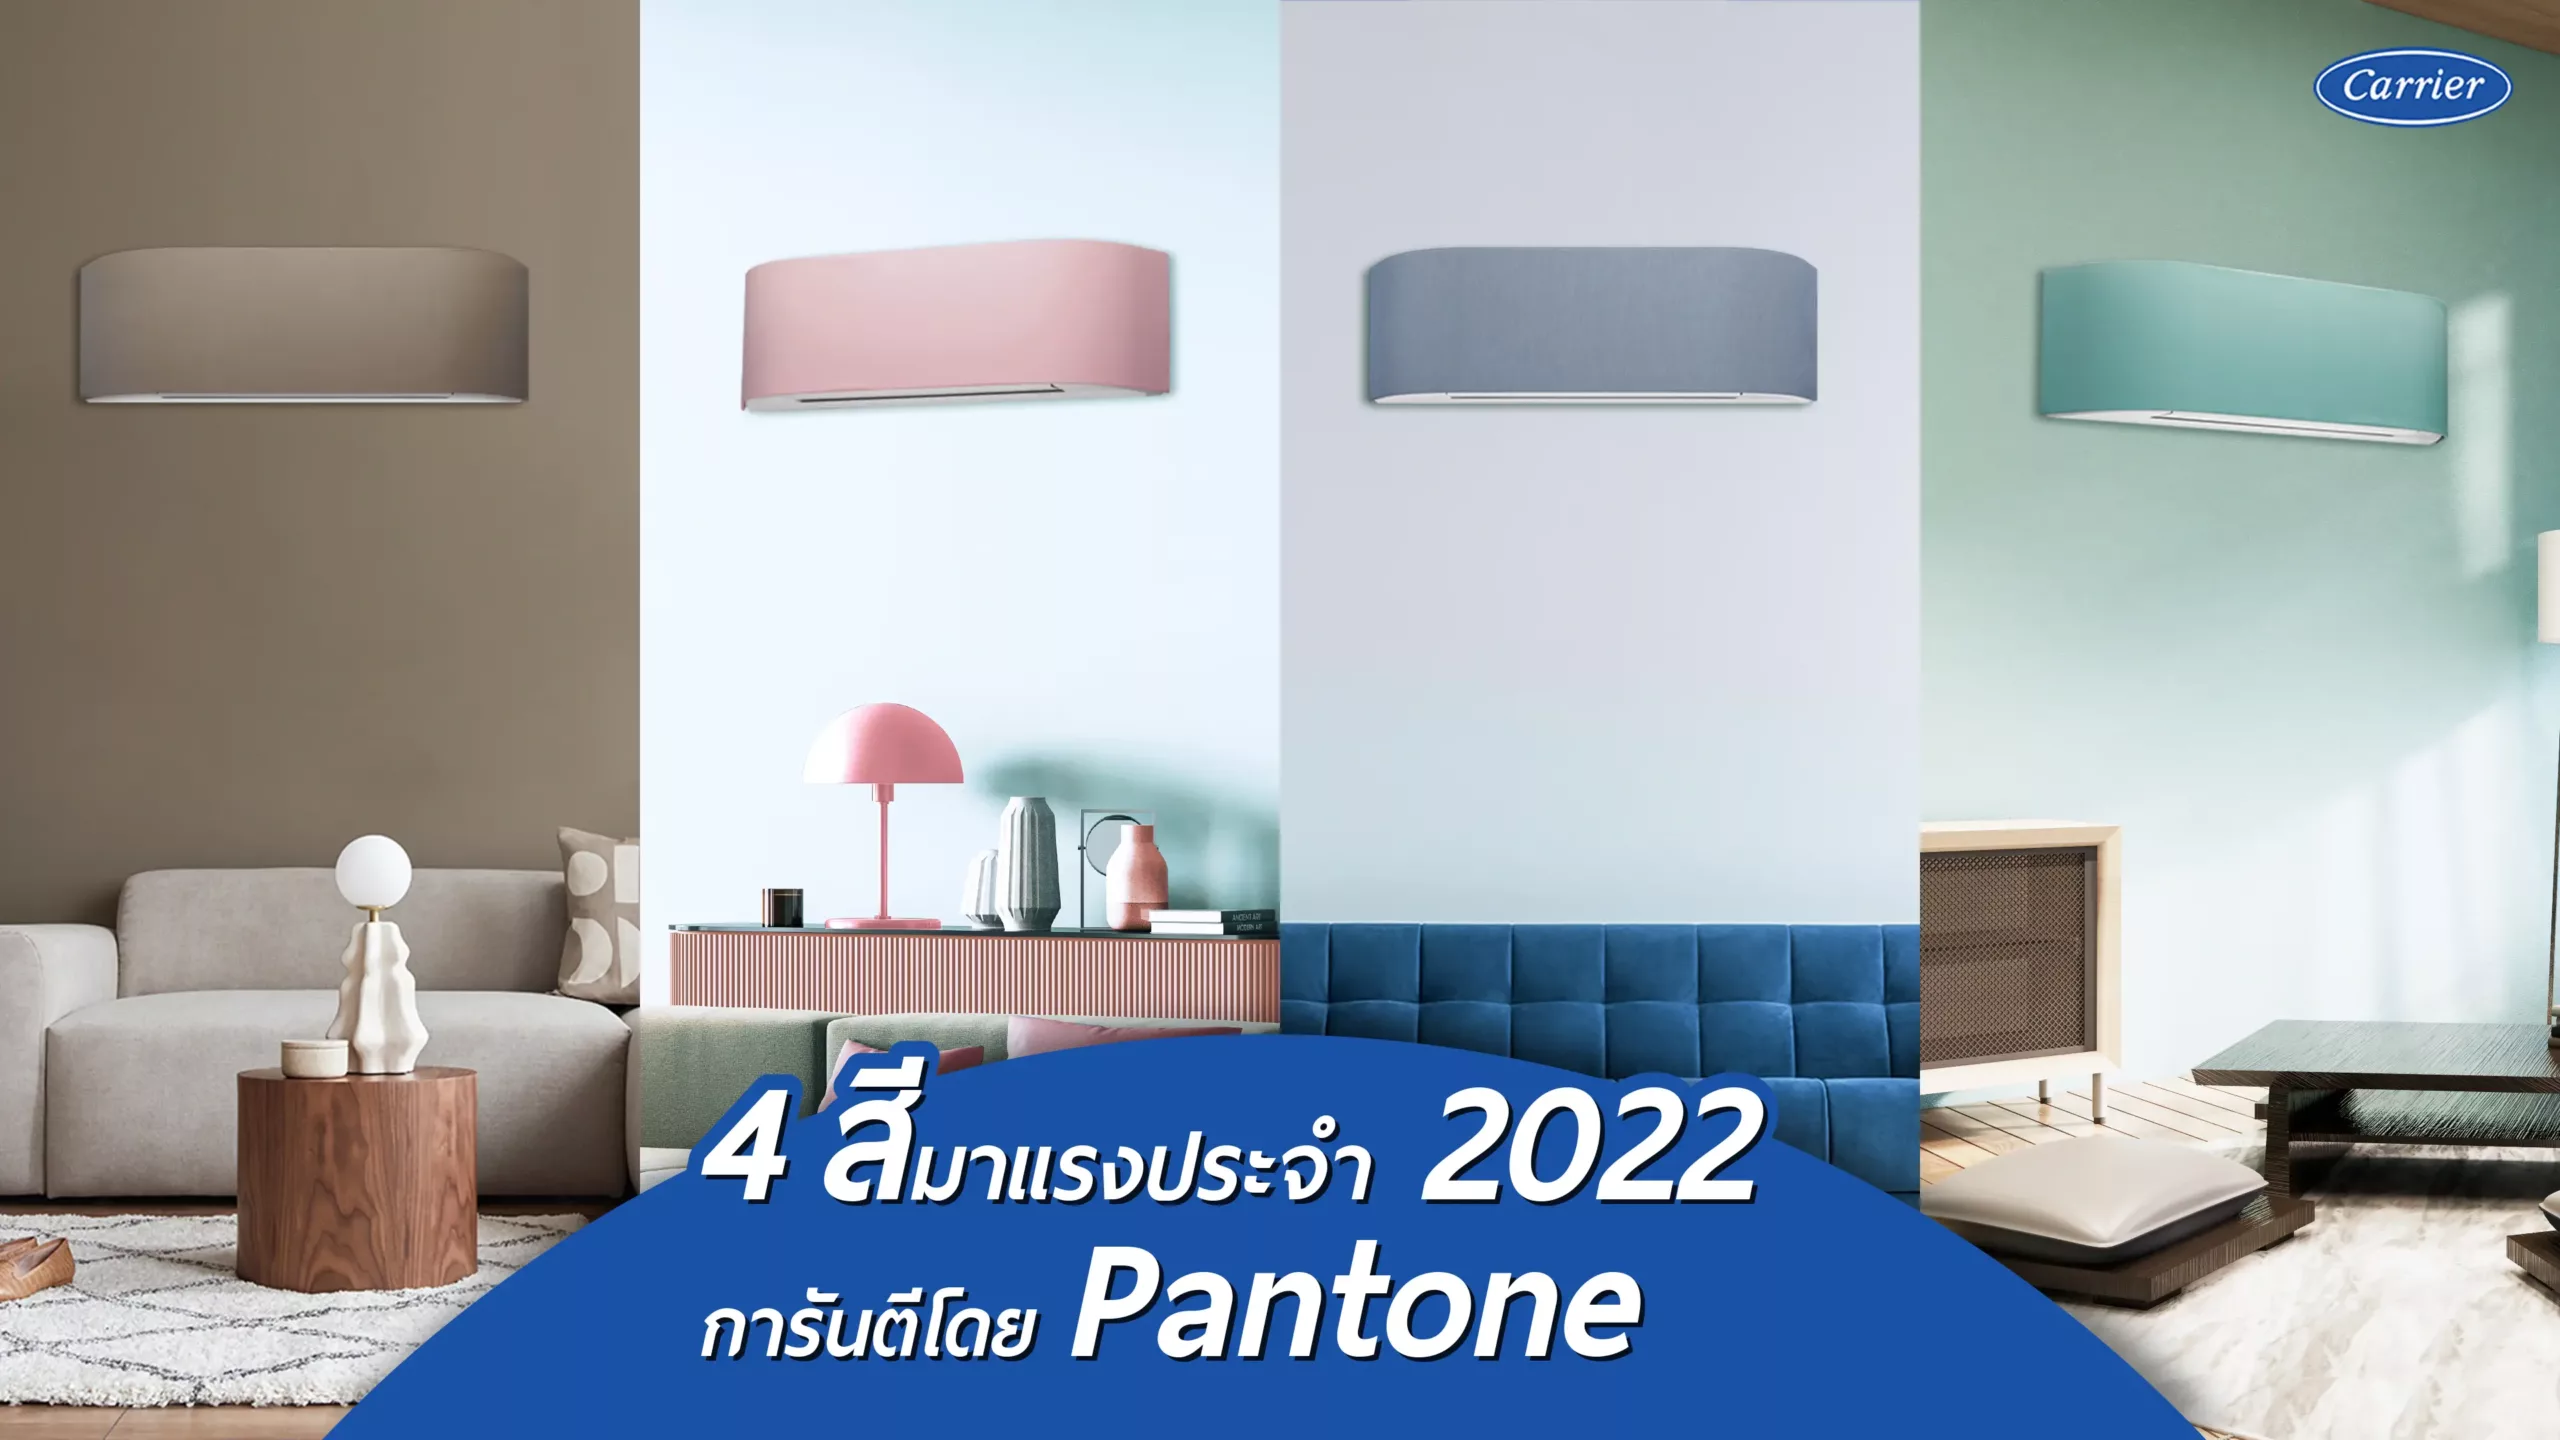 4 สีมาแรงประจำ 2022 การันตีโดย Pantone